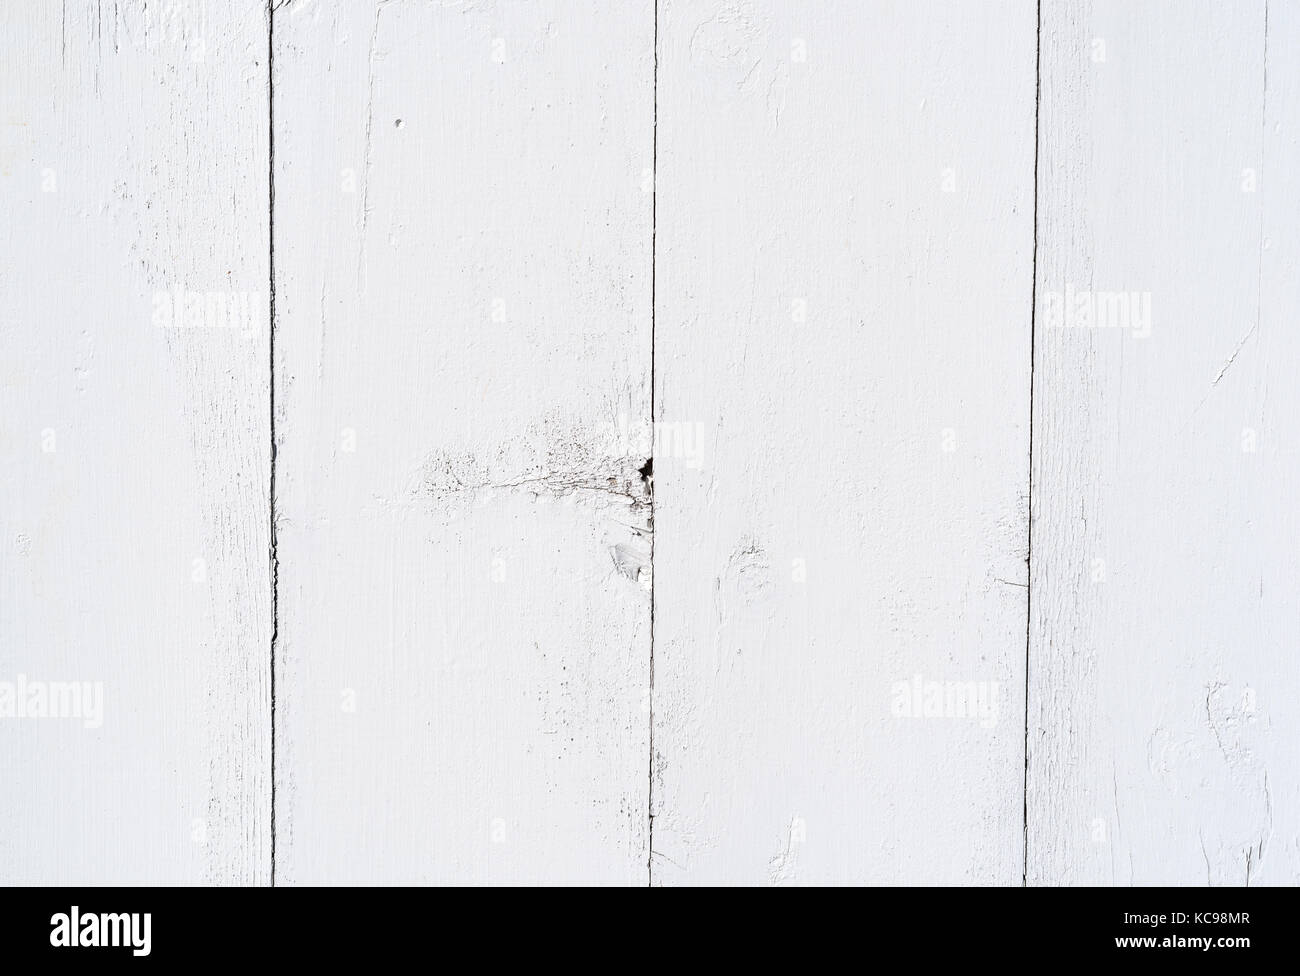 Reihen mit weiß lackiertem Holz board Siding, Risse und Peeling aus Wetter. Stockfoto